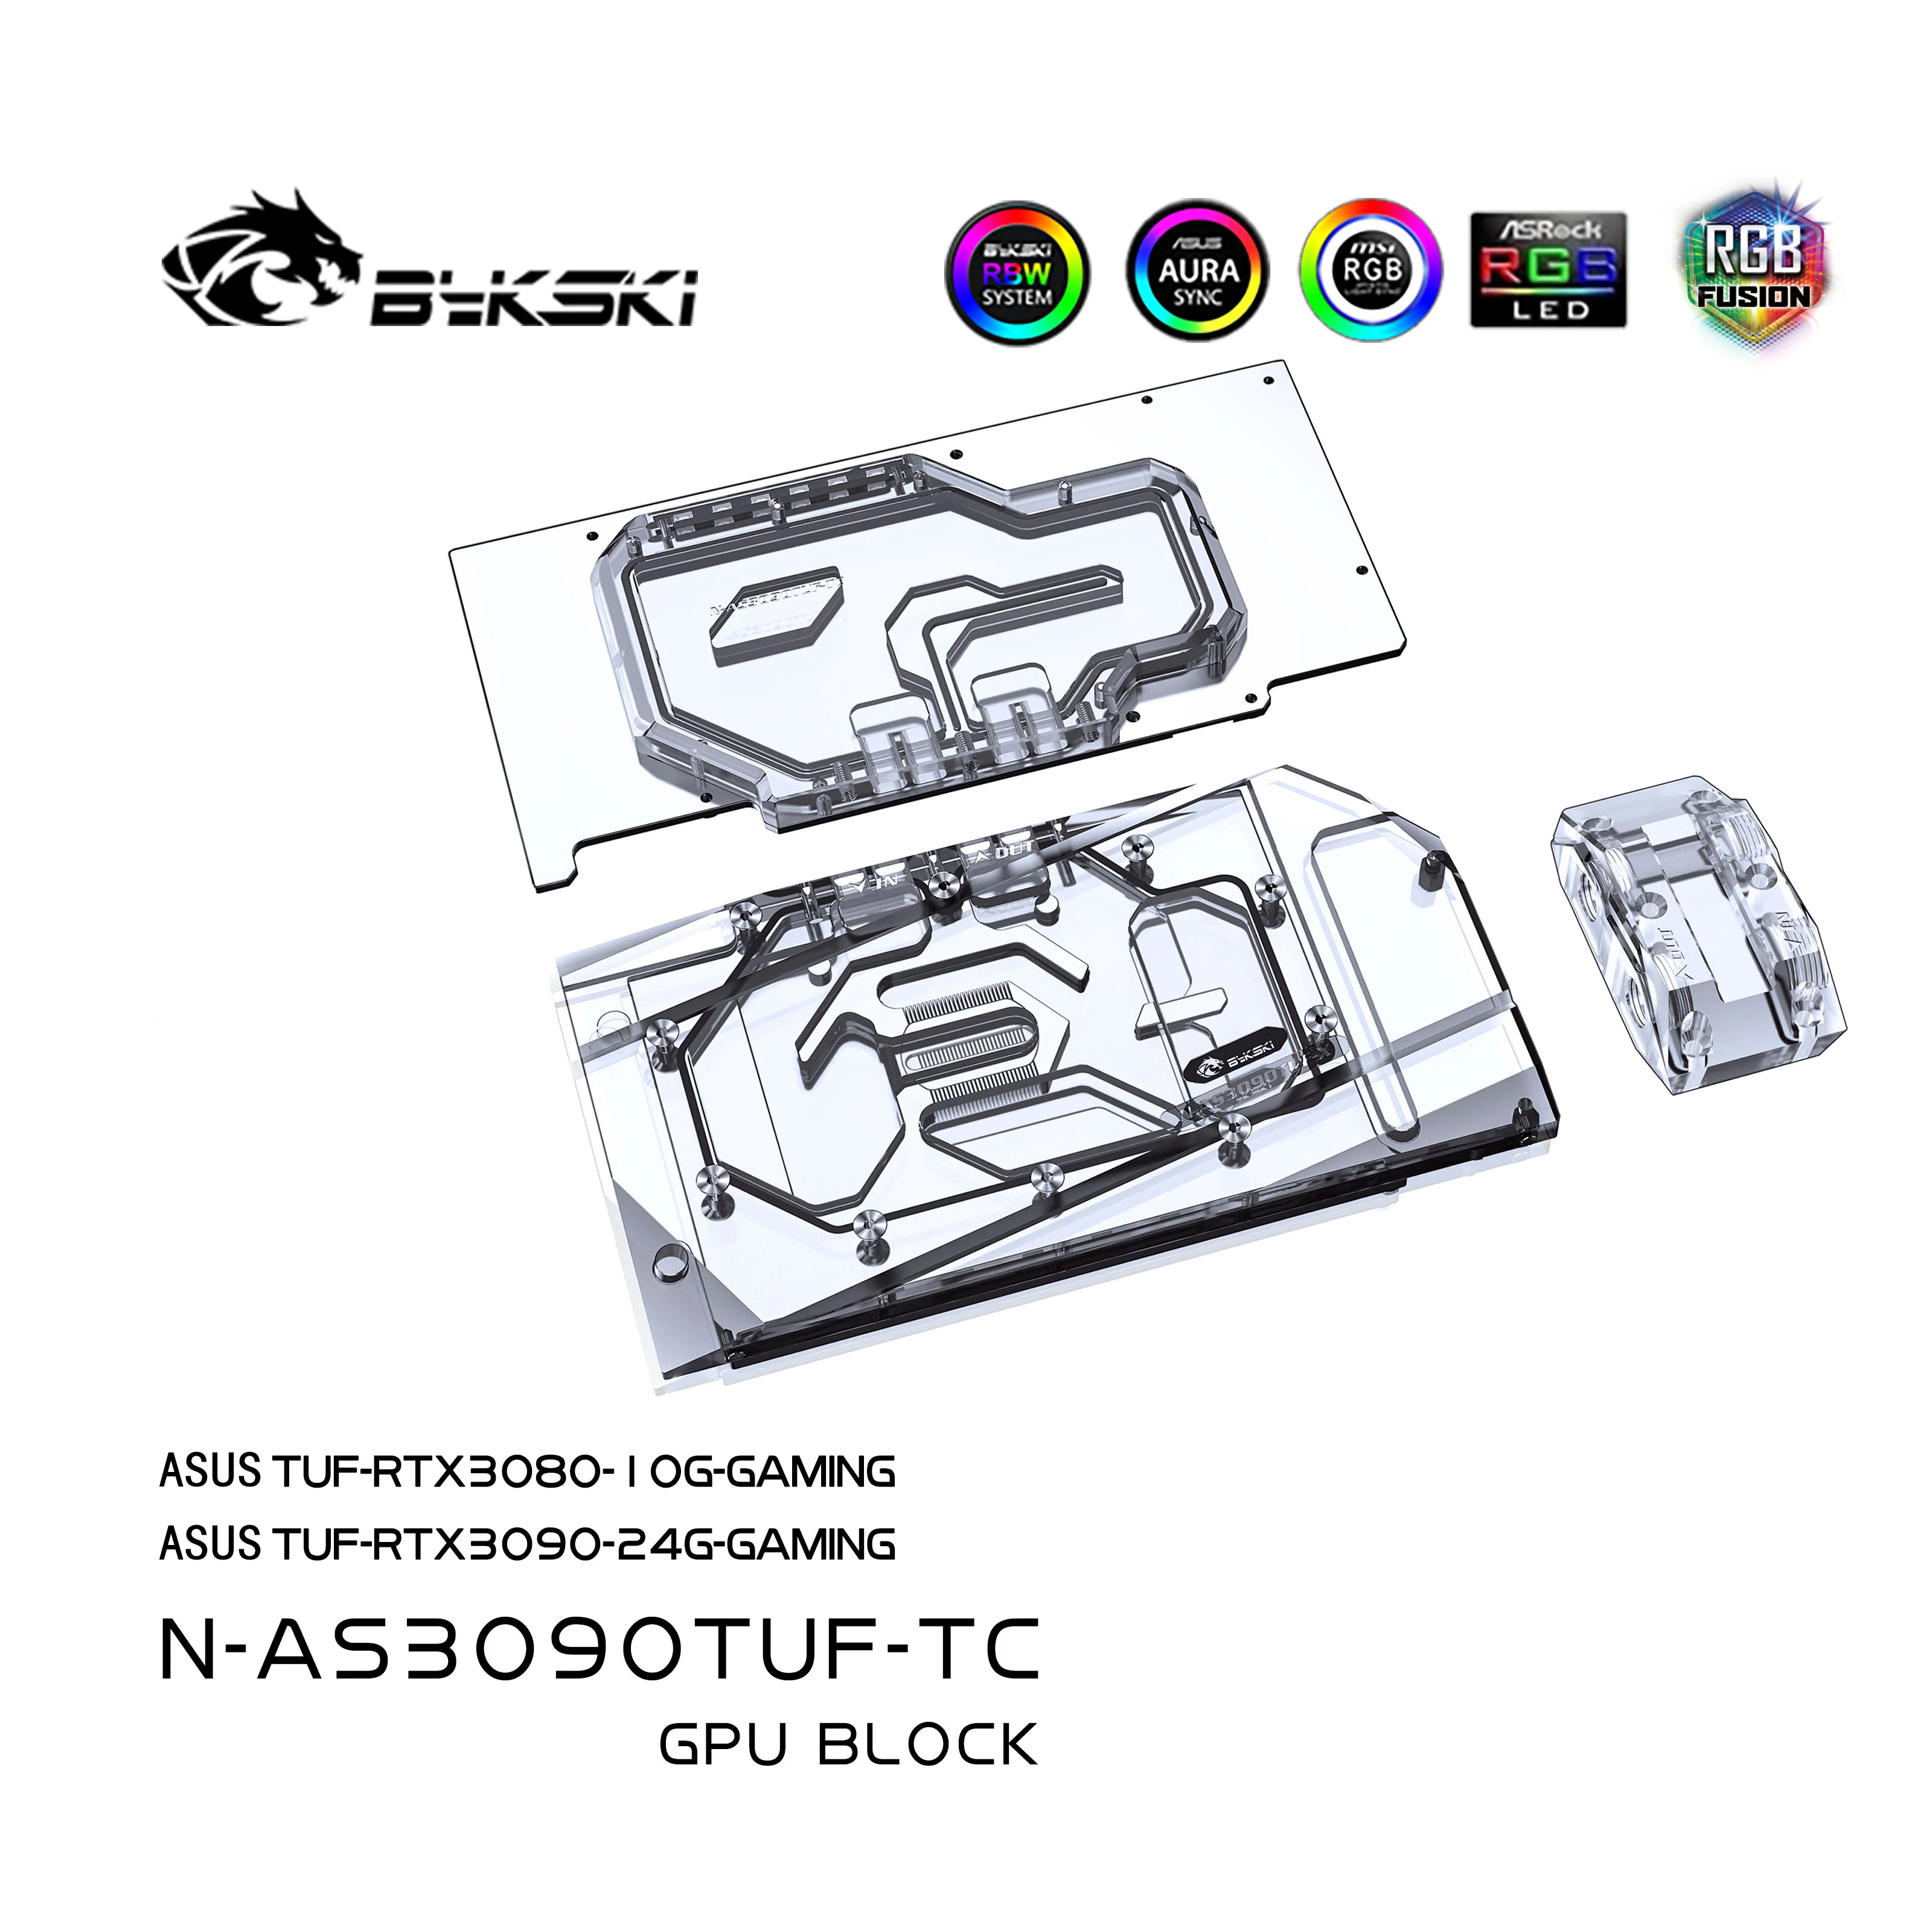 Bykski-Bloque de refrigeración por agua, GPU, N-AS3090TUF-TC, para ASUS TUF RTX 3090 /3080, tarjeta gráfica de juego con placa trasera de cobre especial